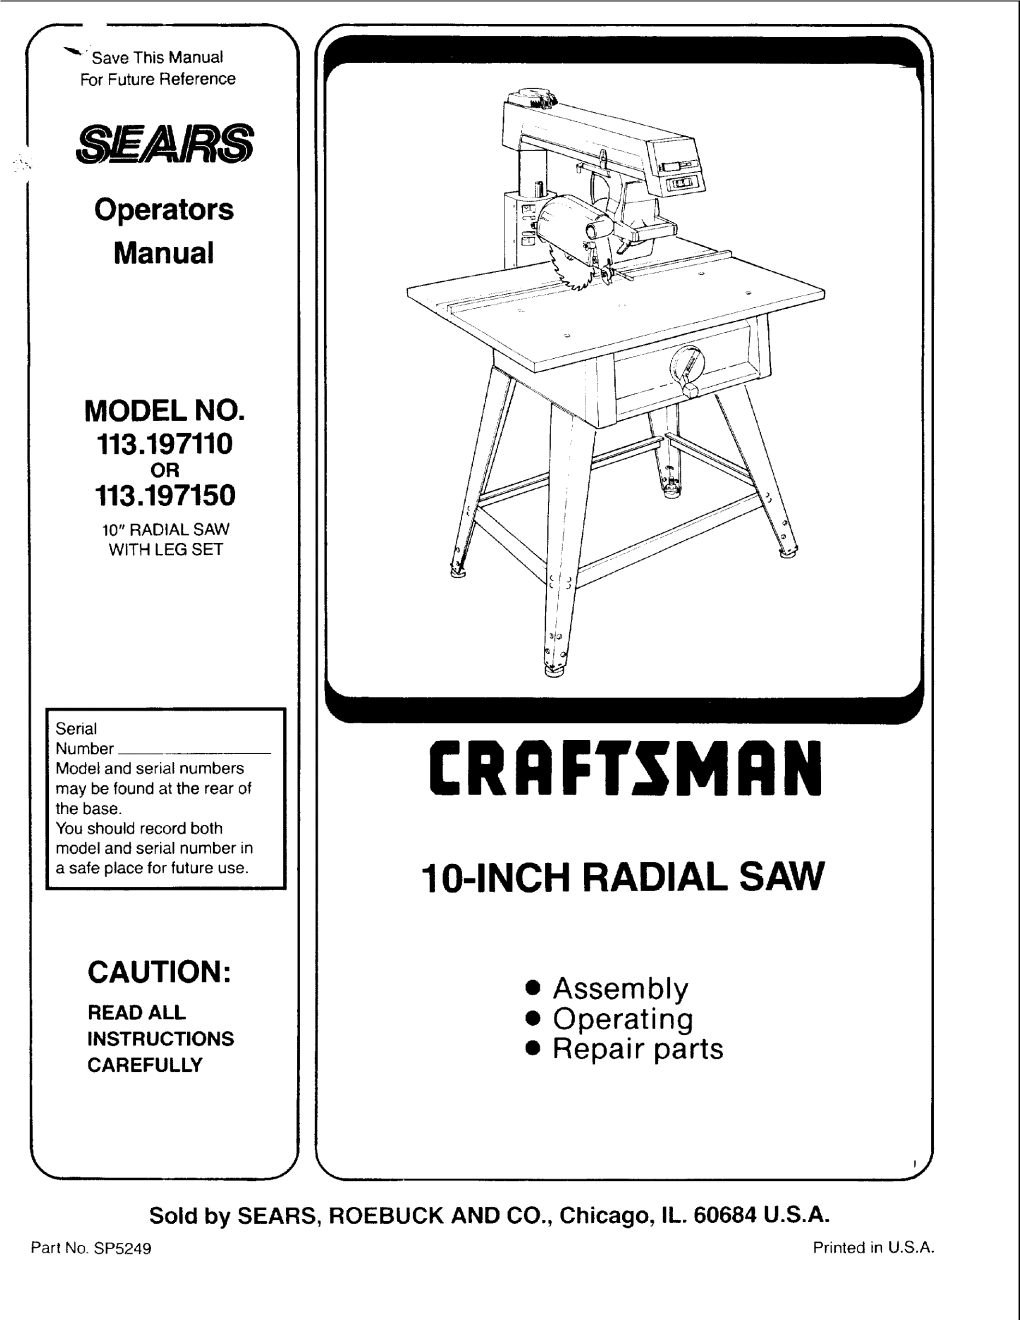 Operators Manual MODEL NO. 113.197110